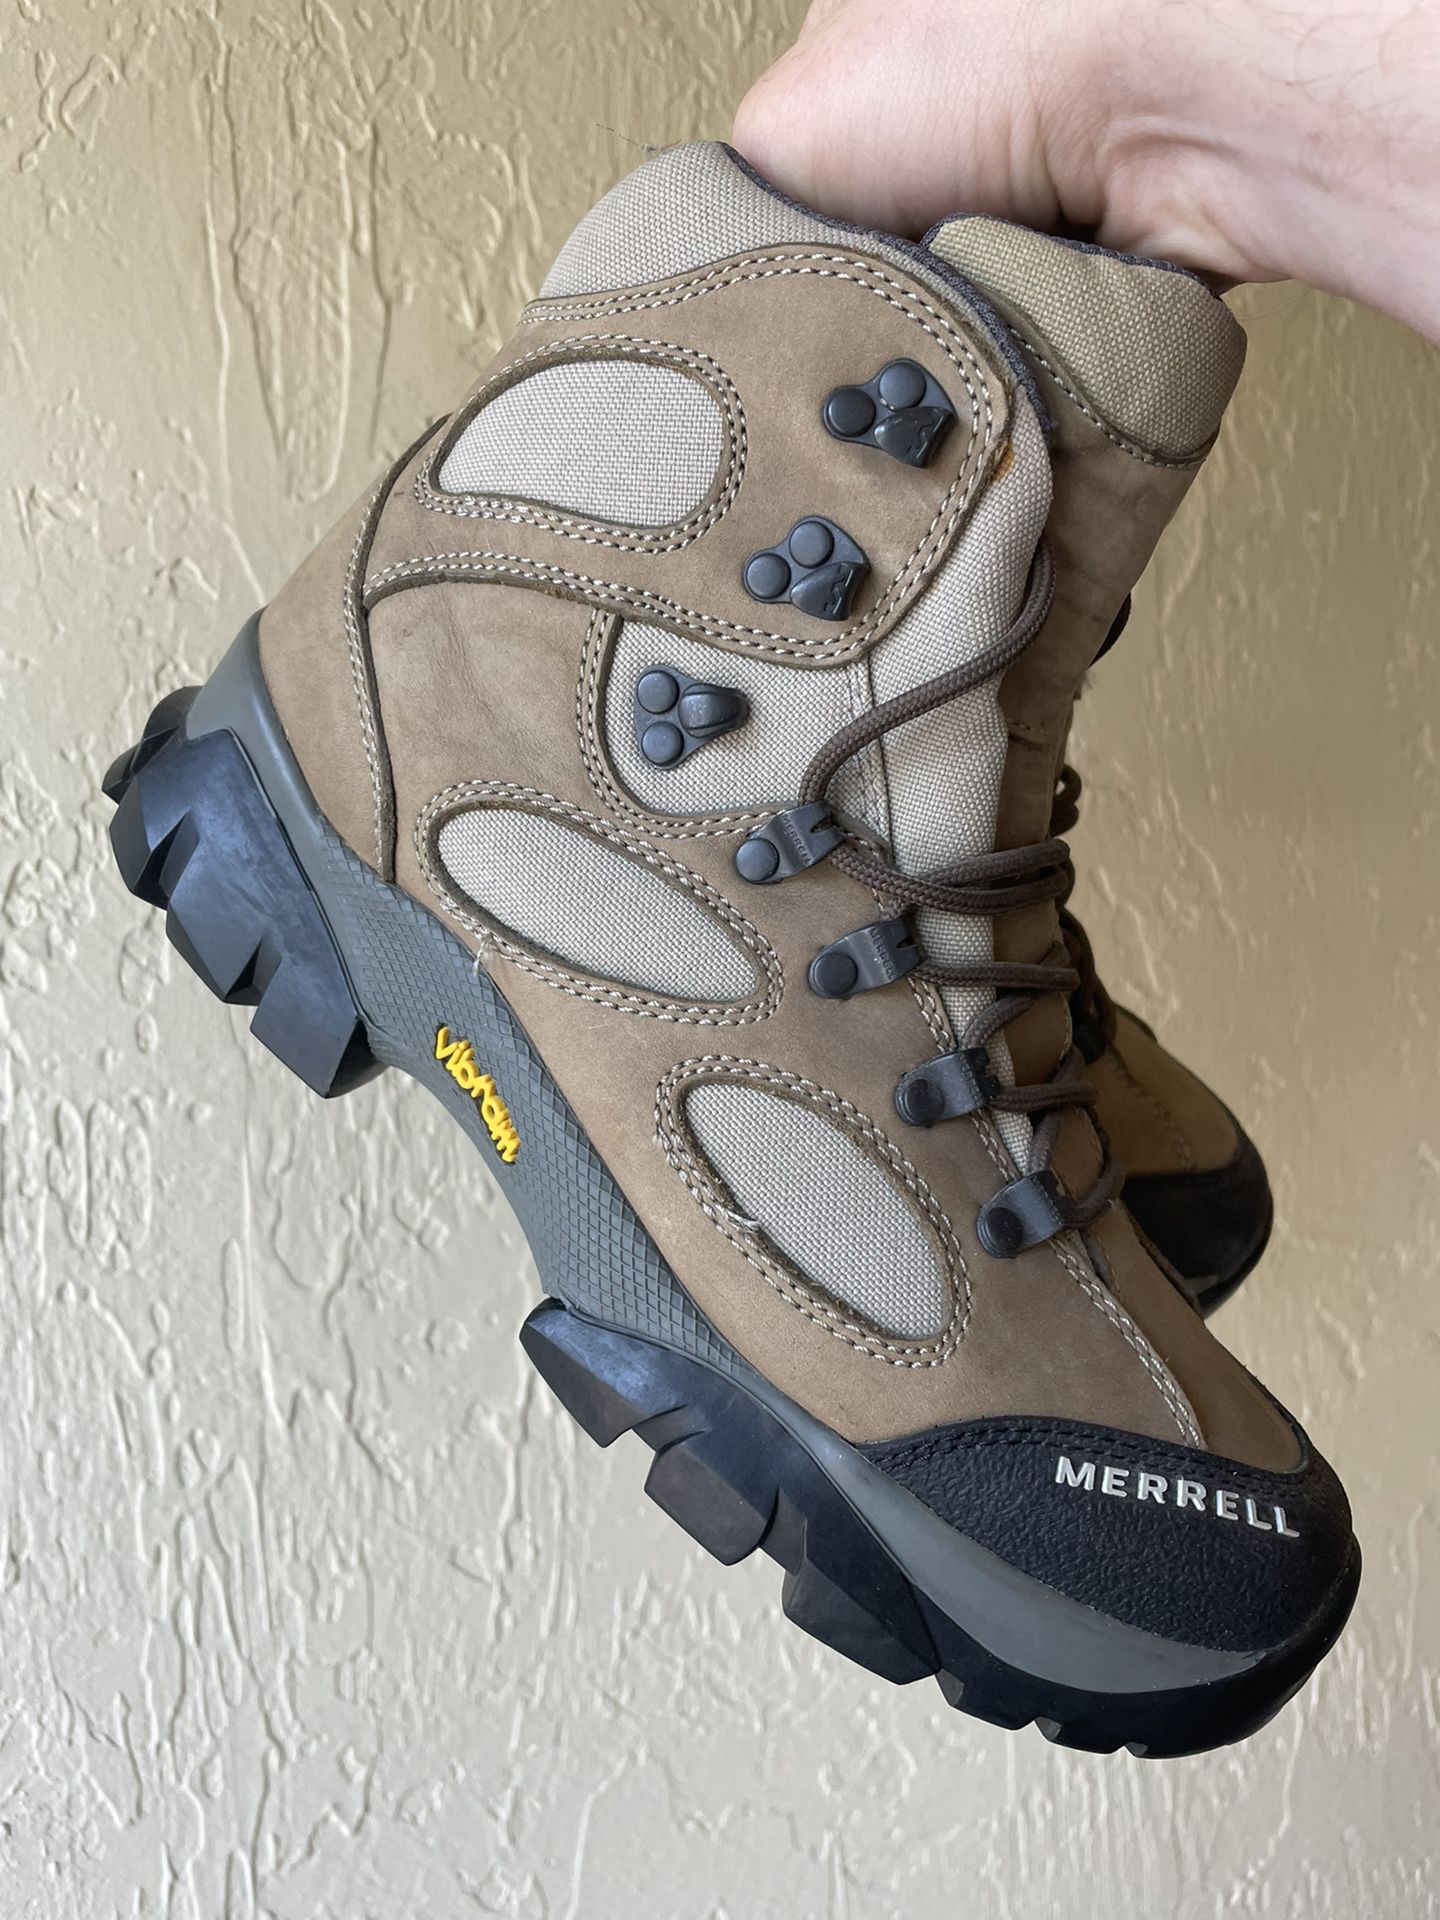 MERRELL Women’s Sz 8 Sawtooth Walnut Hiking Trail Boots Vibram Brown Workboots